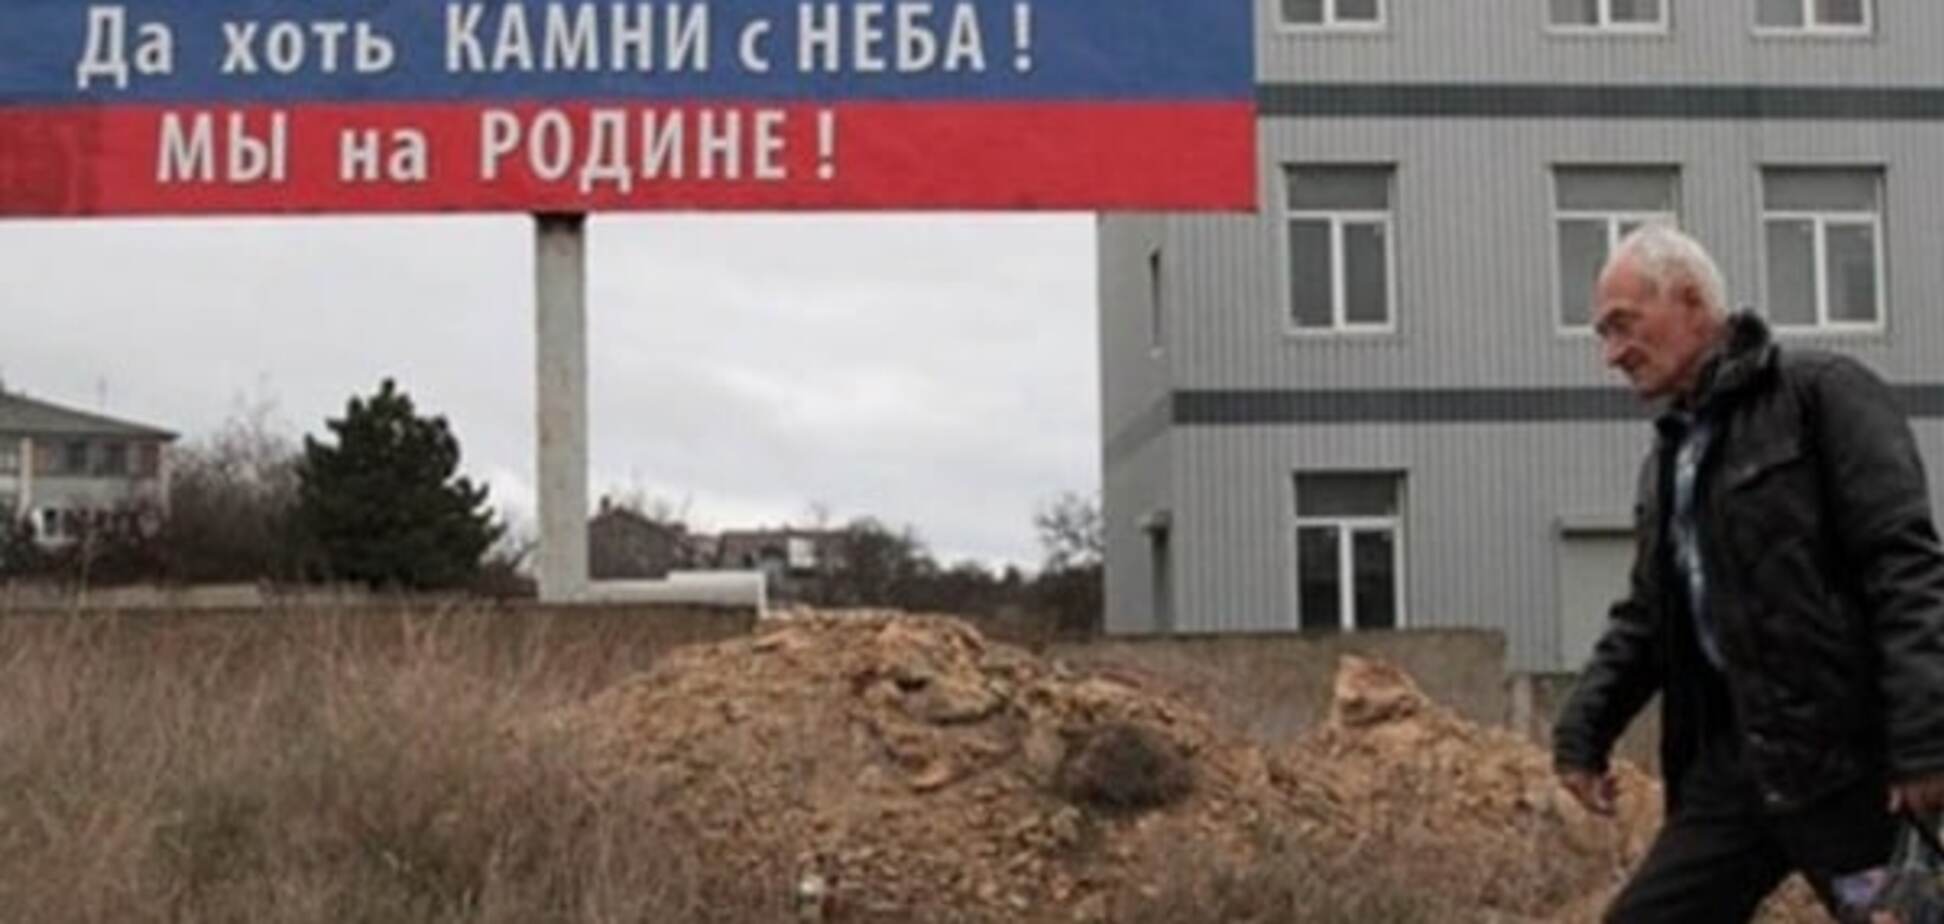 'Майдан' у Криму: в Севастополі збунтувалися і вимагають відставки 'уряду'